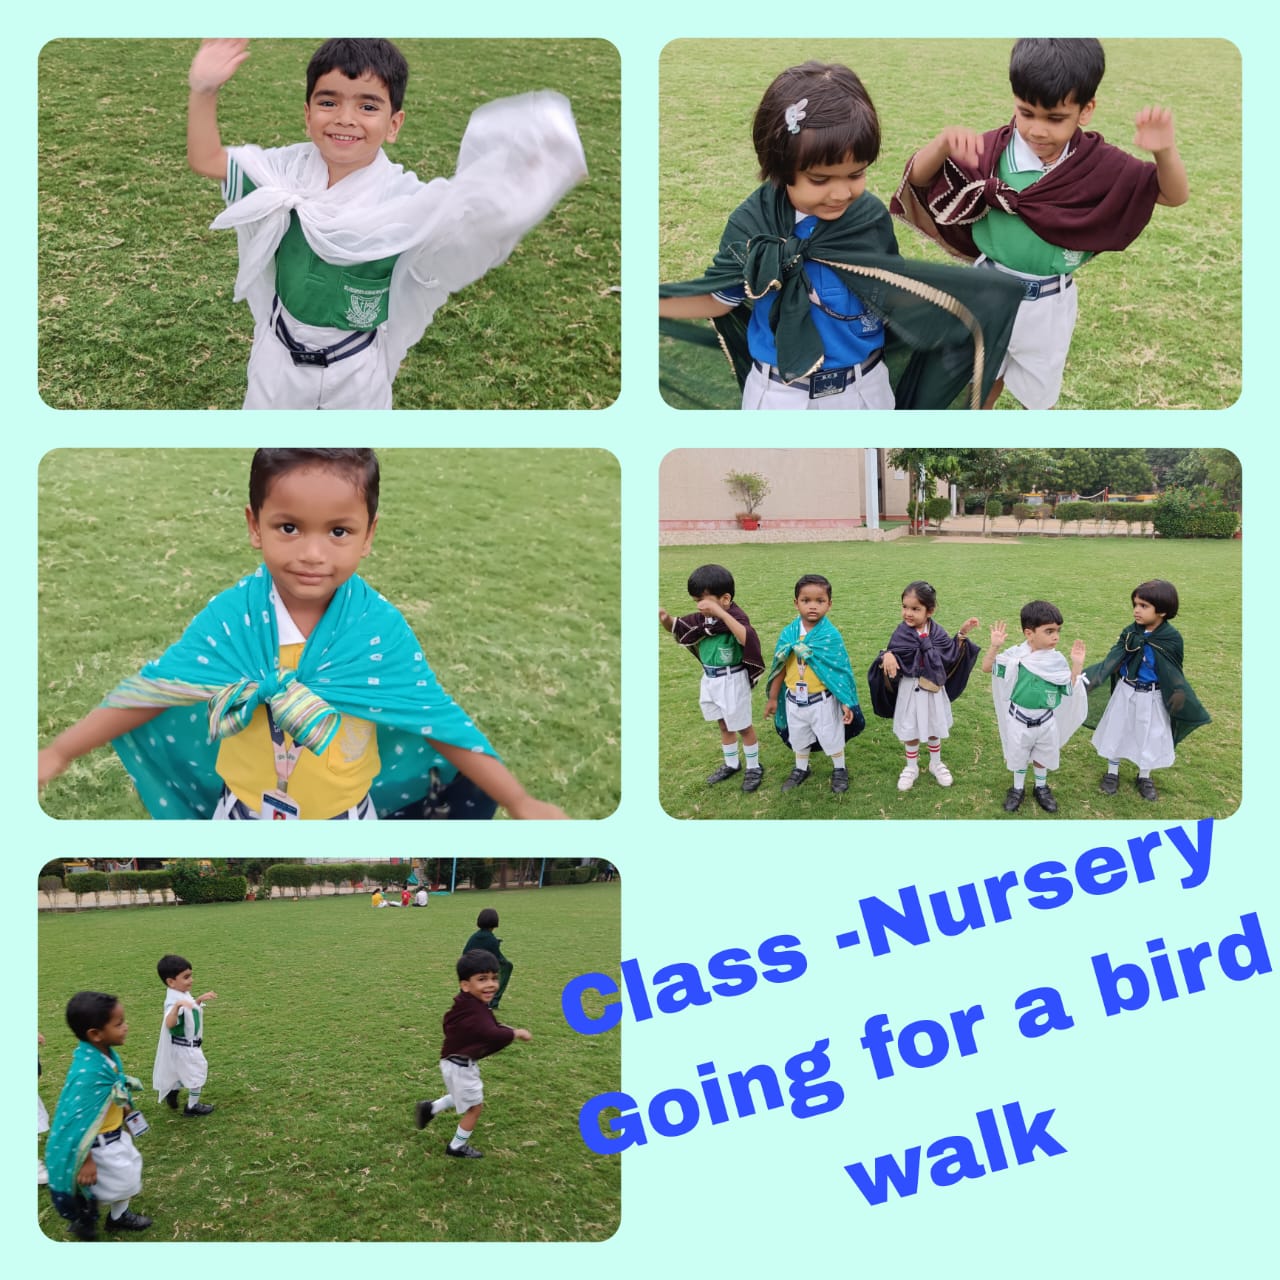 CLASS NURSERY- GOING FOR A BIRD WALK ACTIVITY